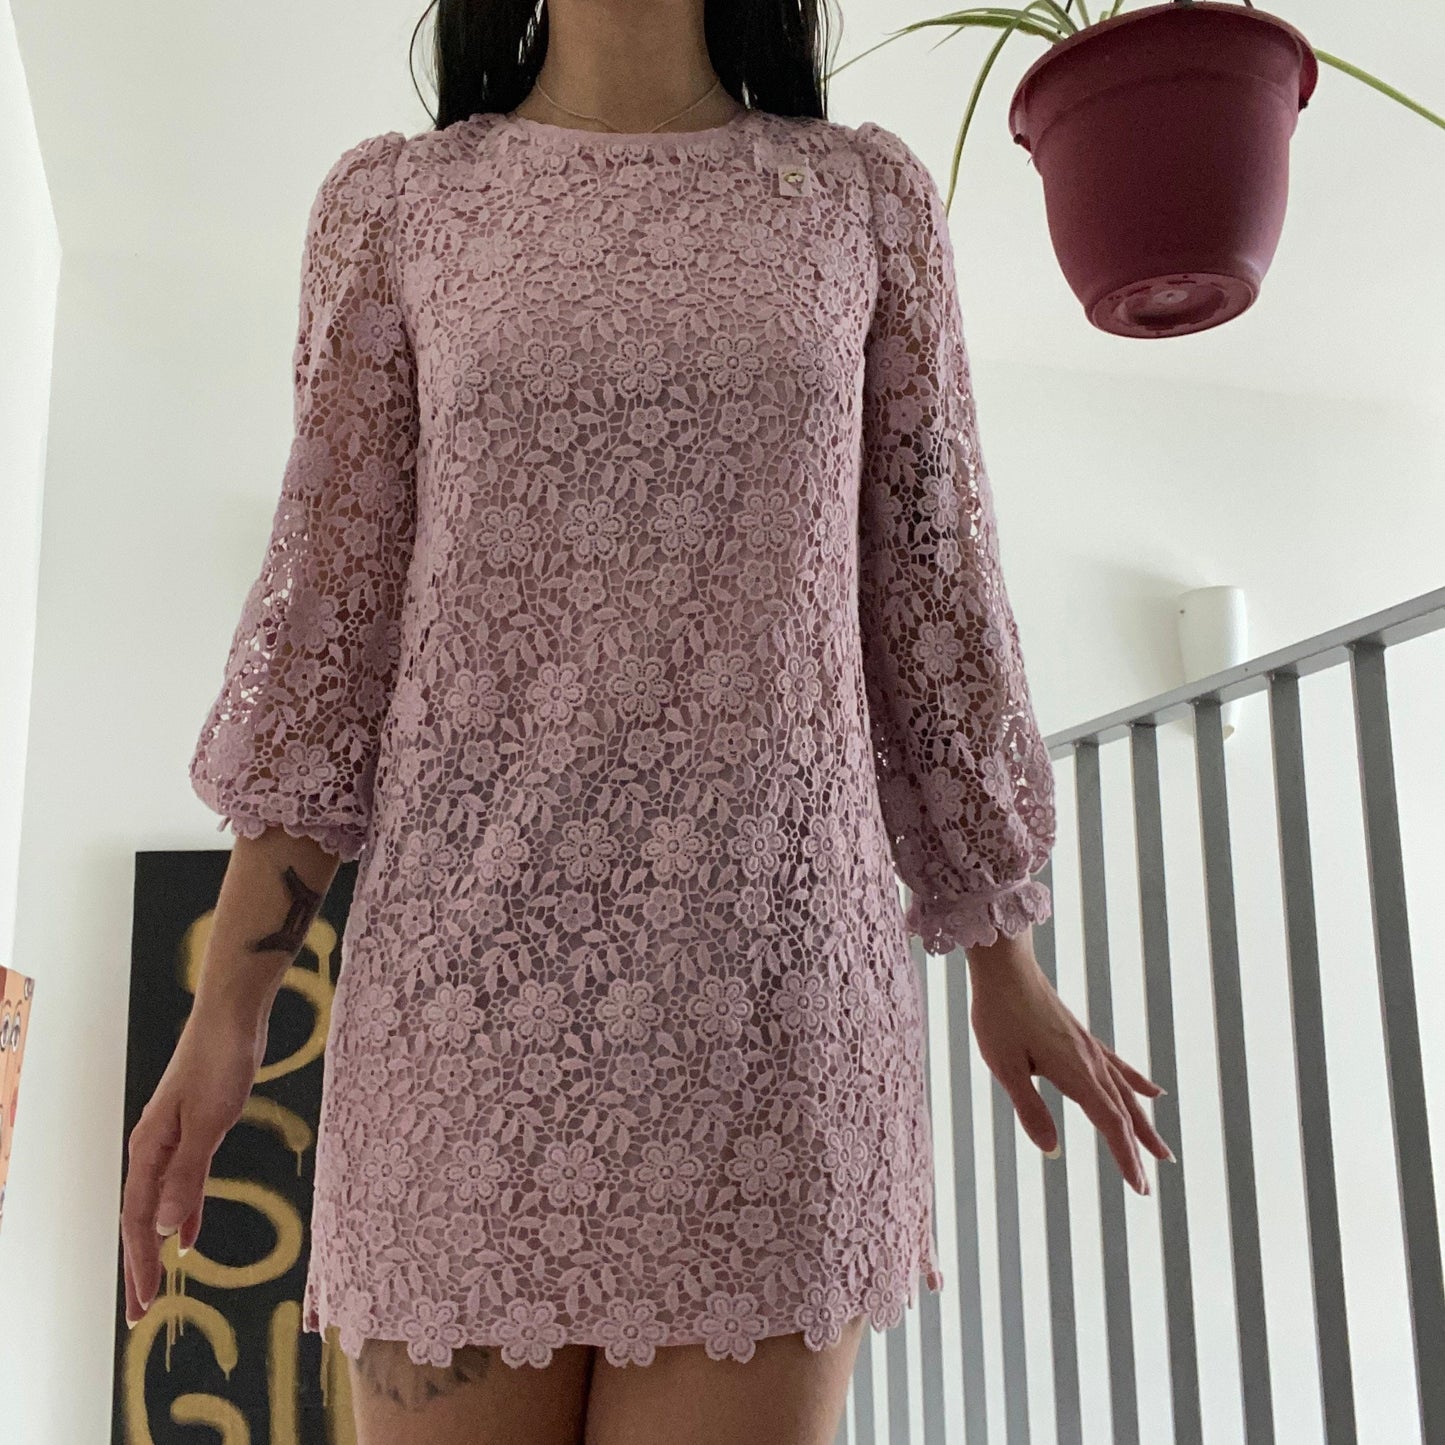 Adorable Lilac Lace Dress